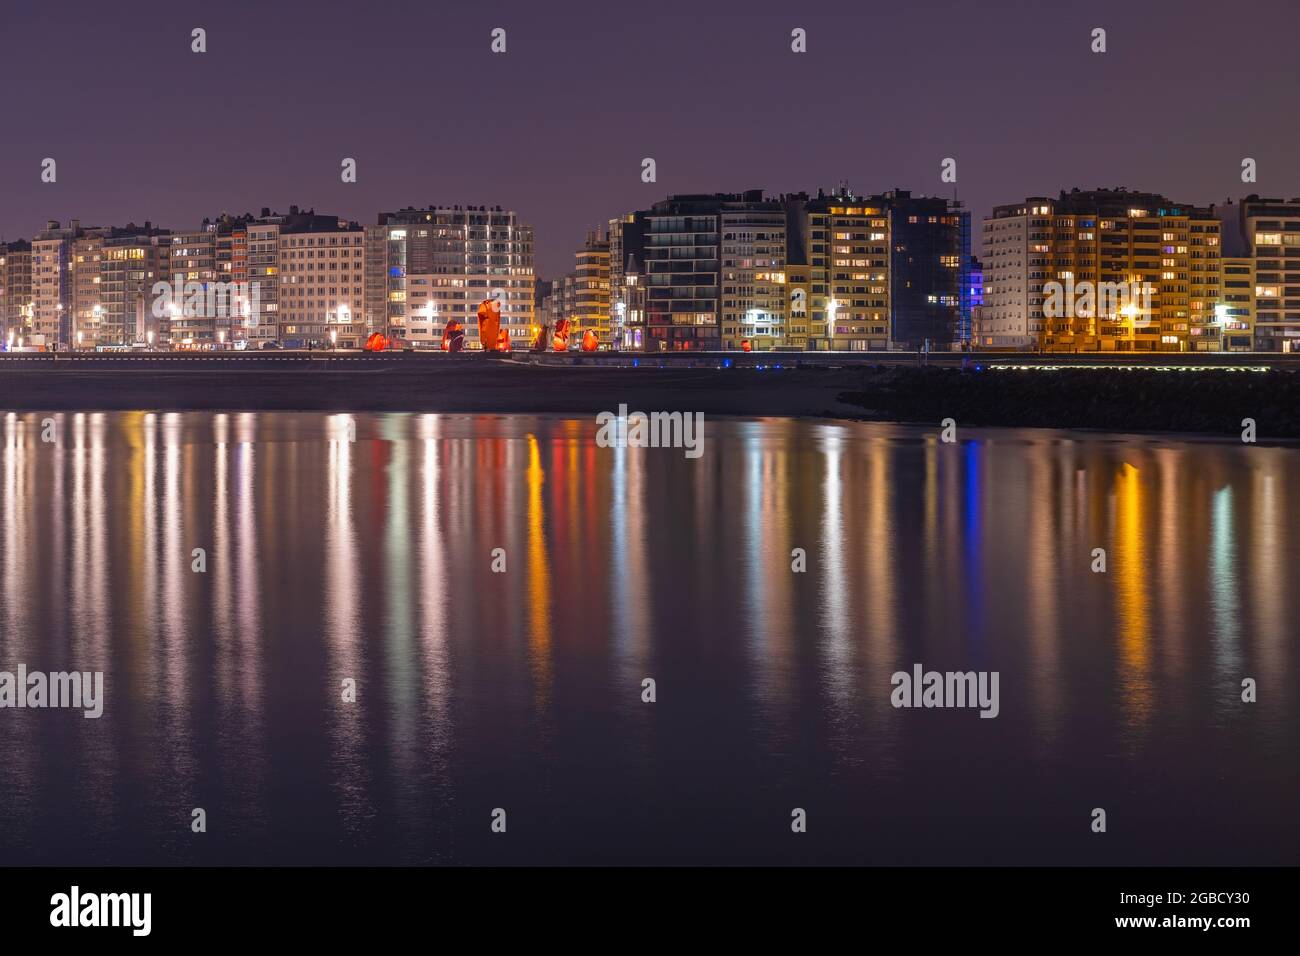 La ville d'Ostende (Oostende) se reflète dans la mer du Nord la nuit, en Belgique. Banque D'Images